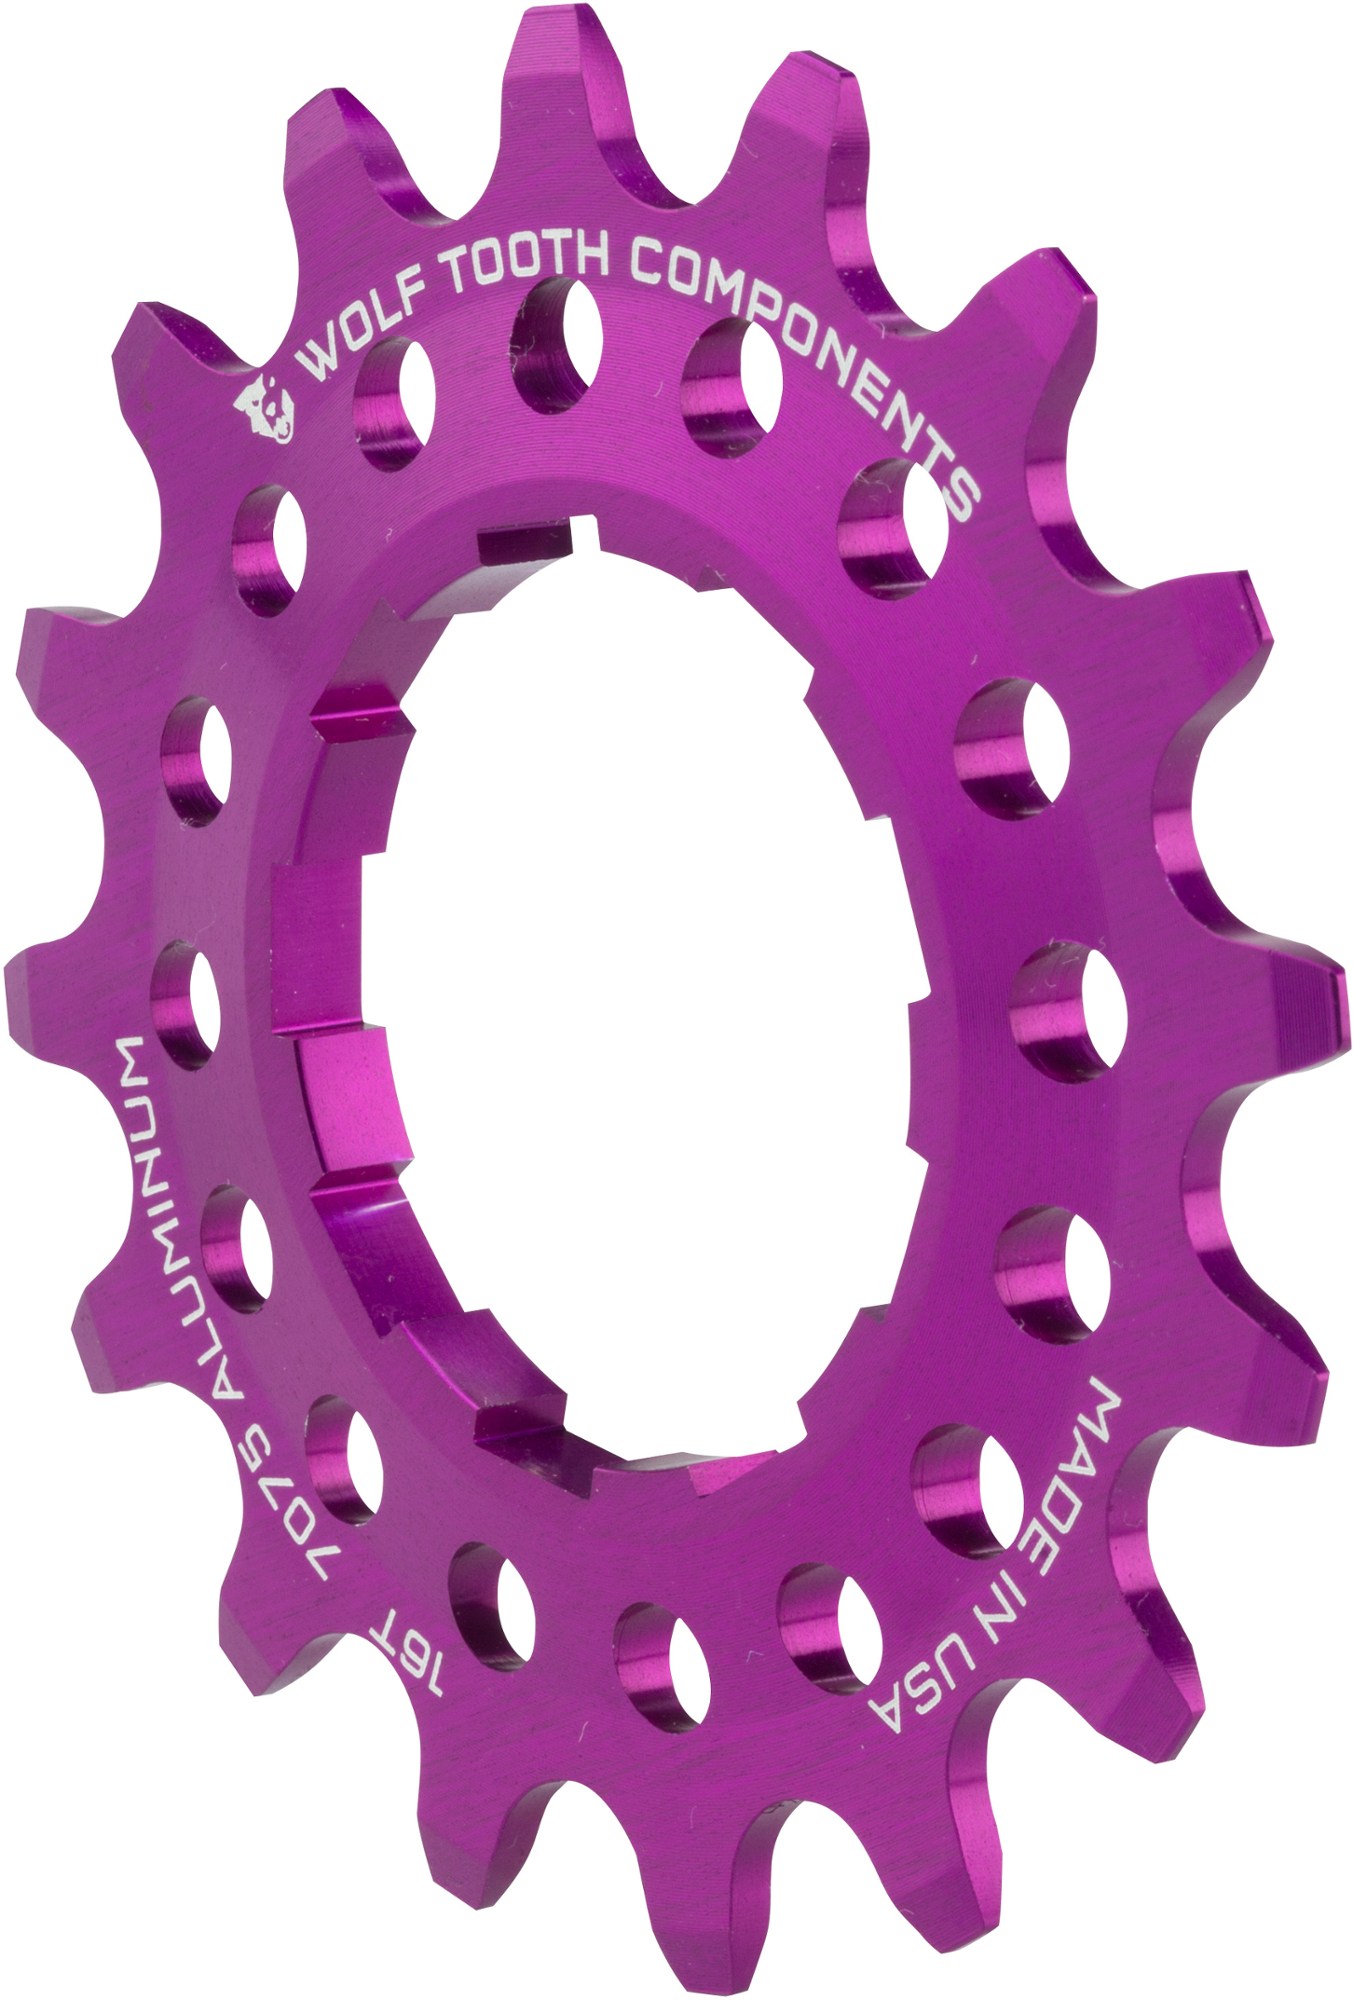 Односкоростной алюминиевый винтик Wolf Tooth Components, фиолетовый шестерня редуктора мясорубки bork зубья 14 9